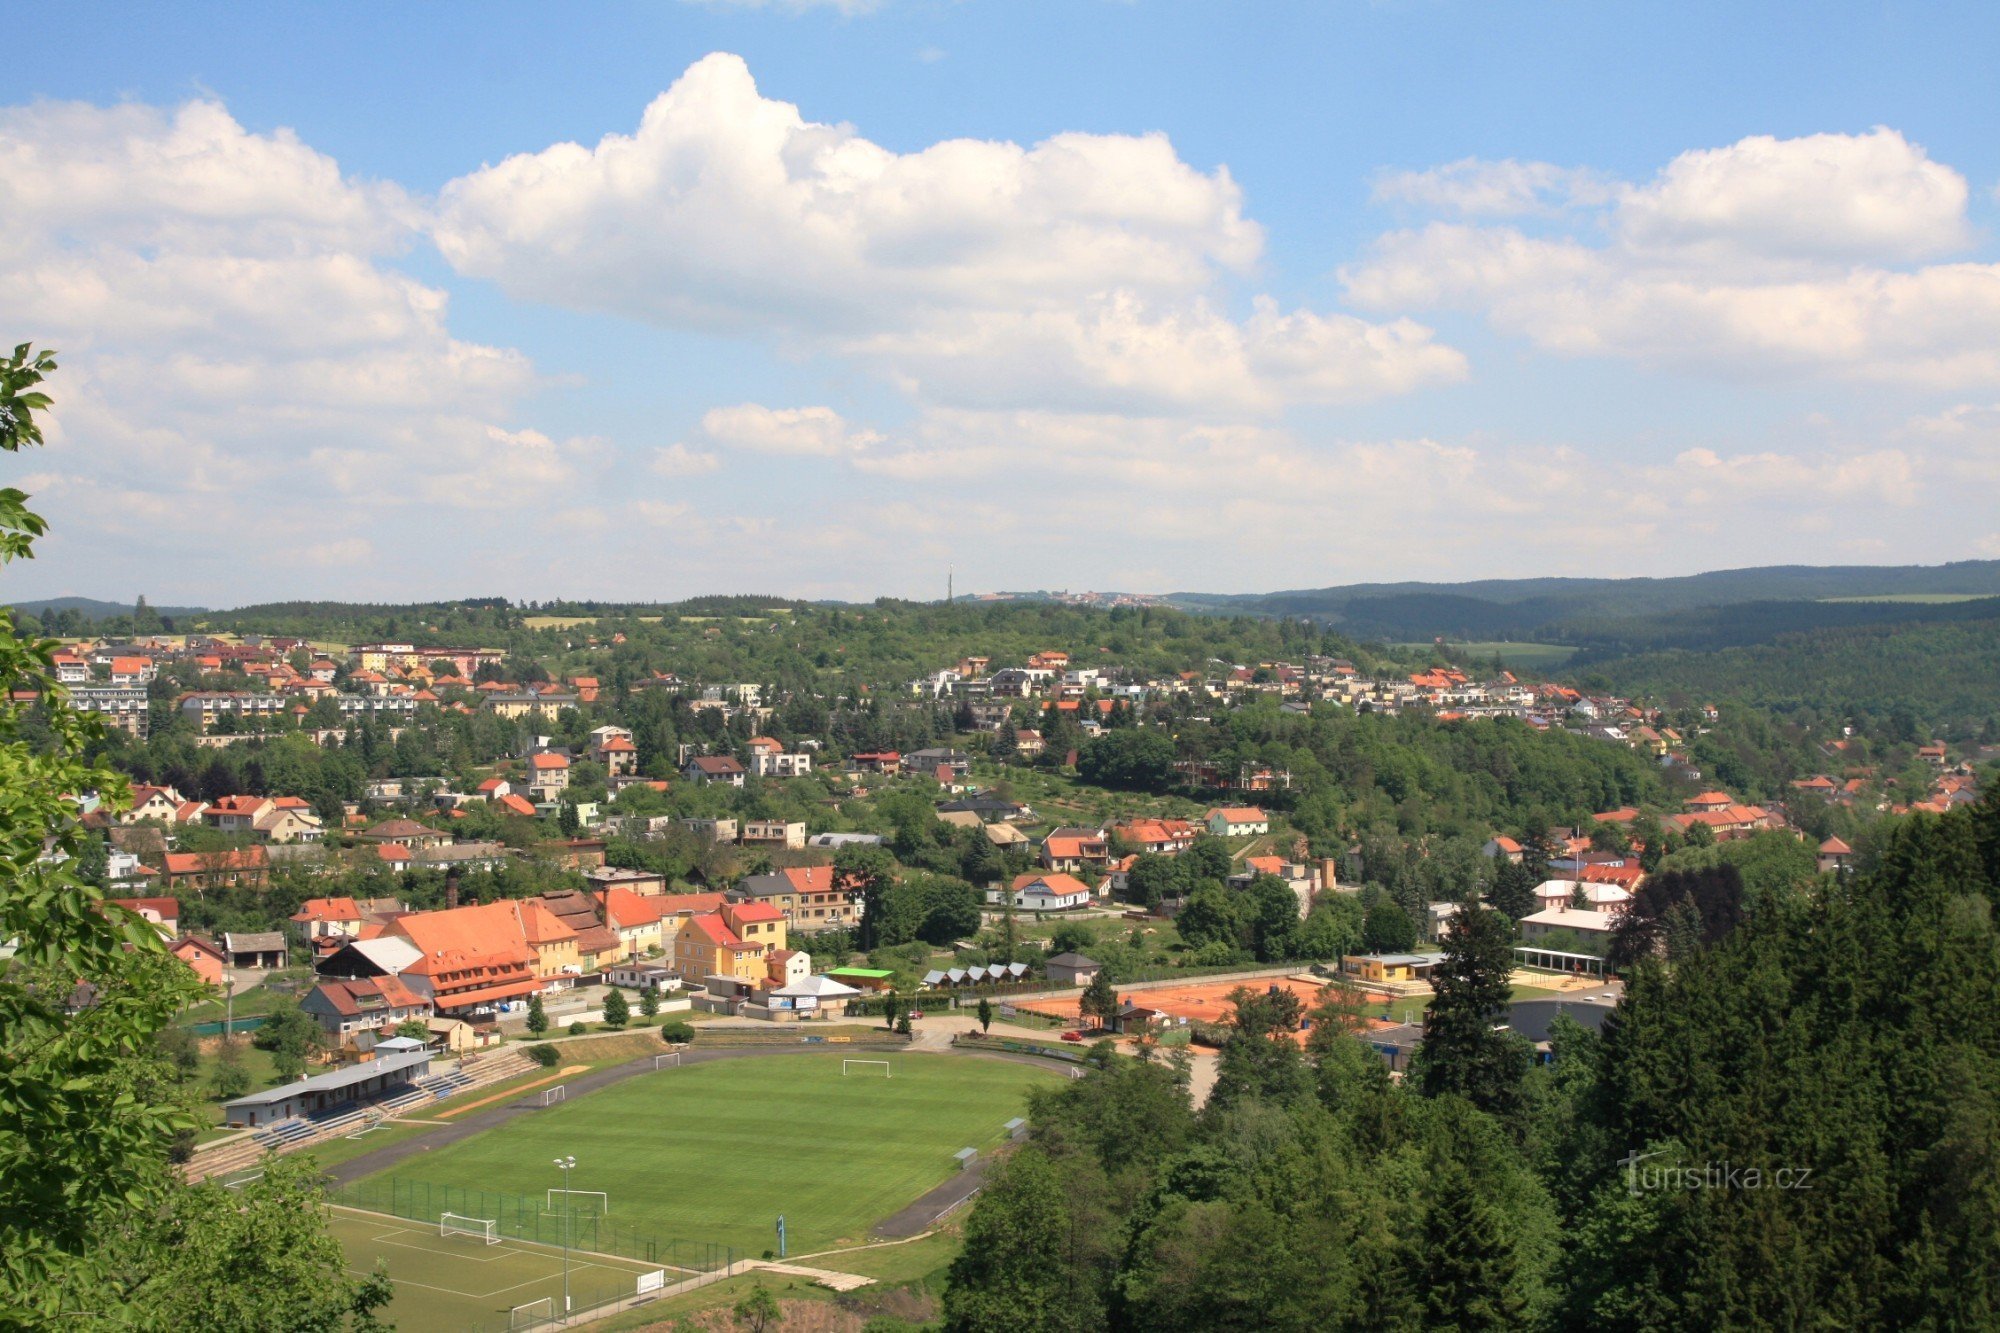 Utsikt från lusthuset på den östra delen av Boskovice och den övre delen av Drahanská vrchovina